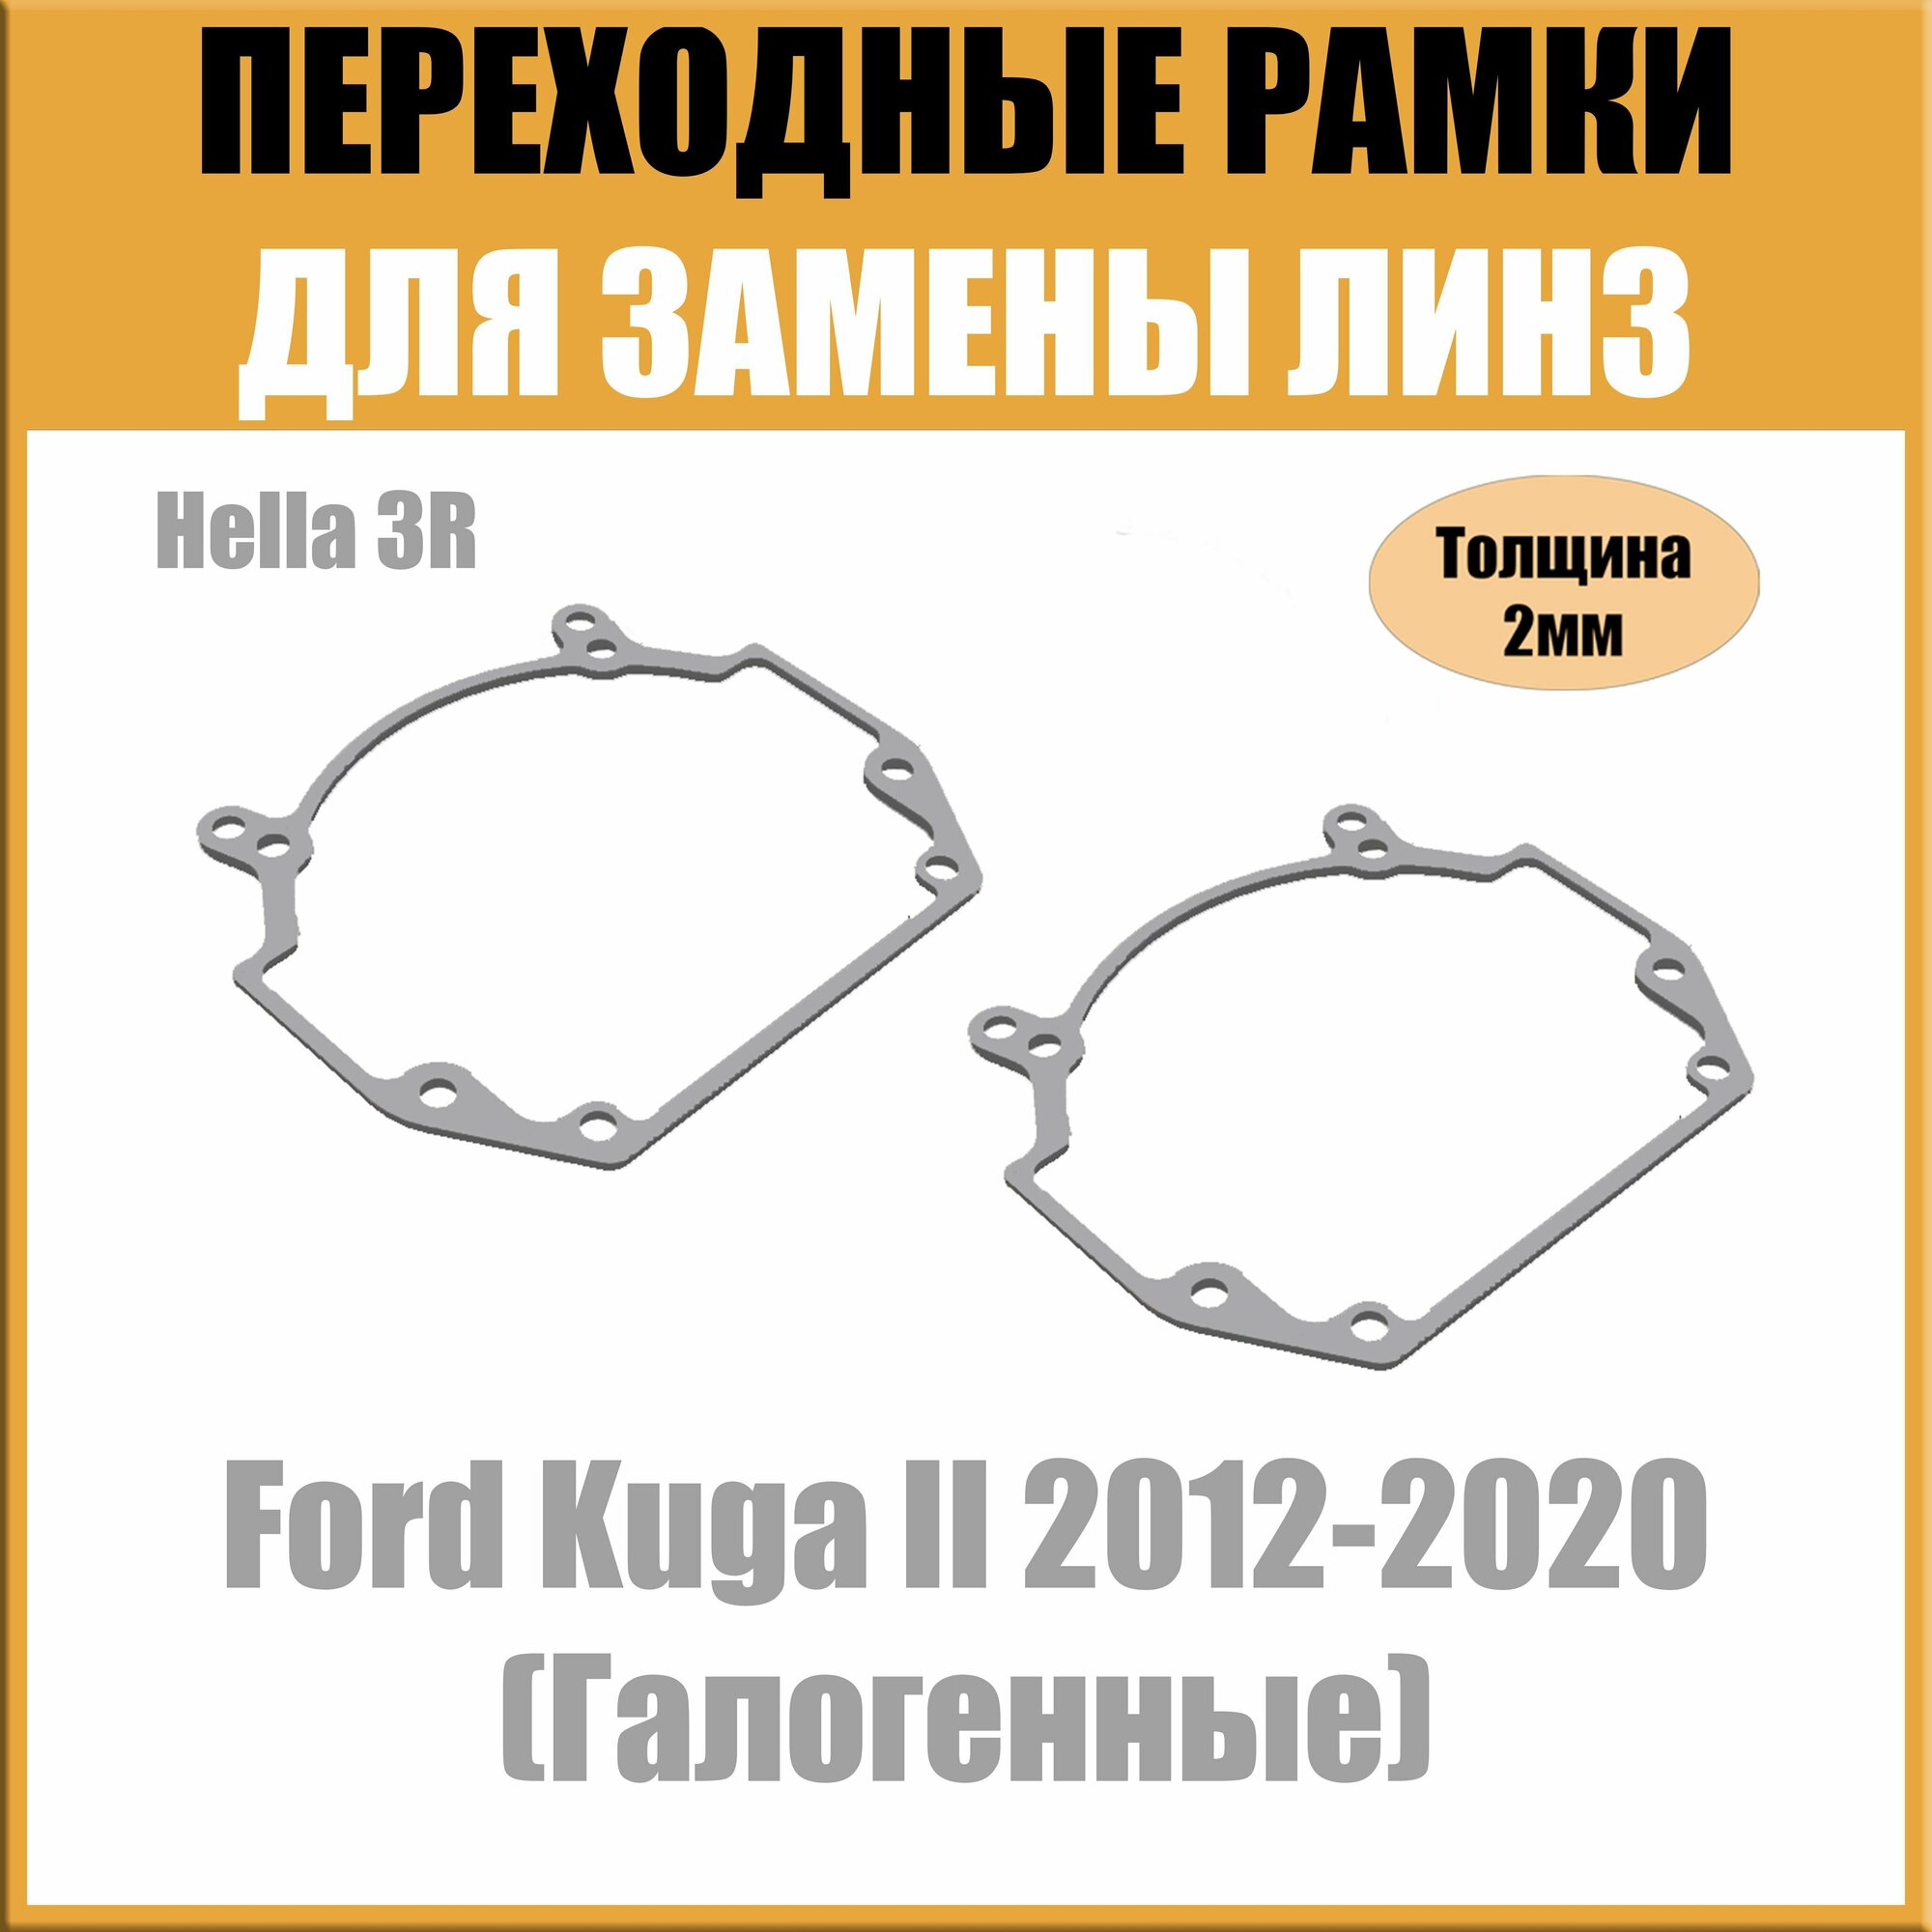 Переходные рамки для линз на Ford Kuga II 2012-2020 (Галогенные) под модуль Hella 3R/Hella 5 (Комплект 2шт)